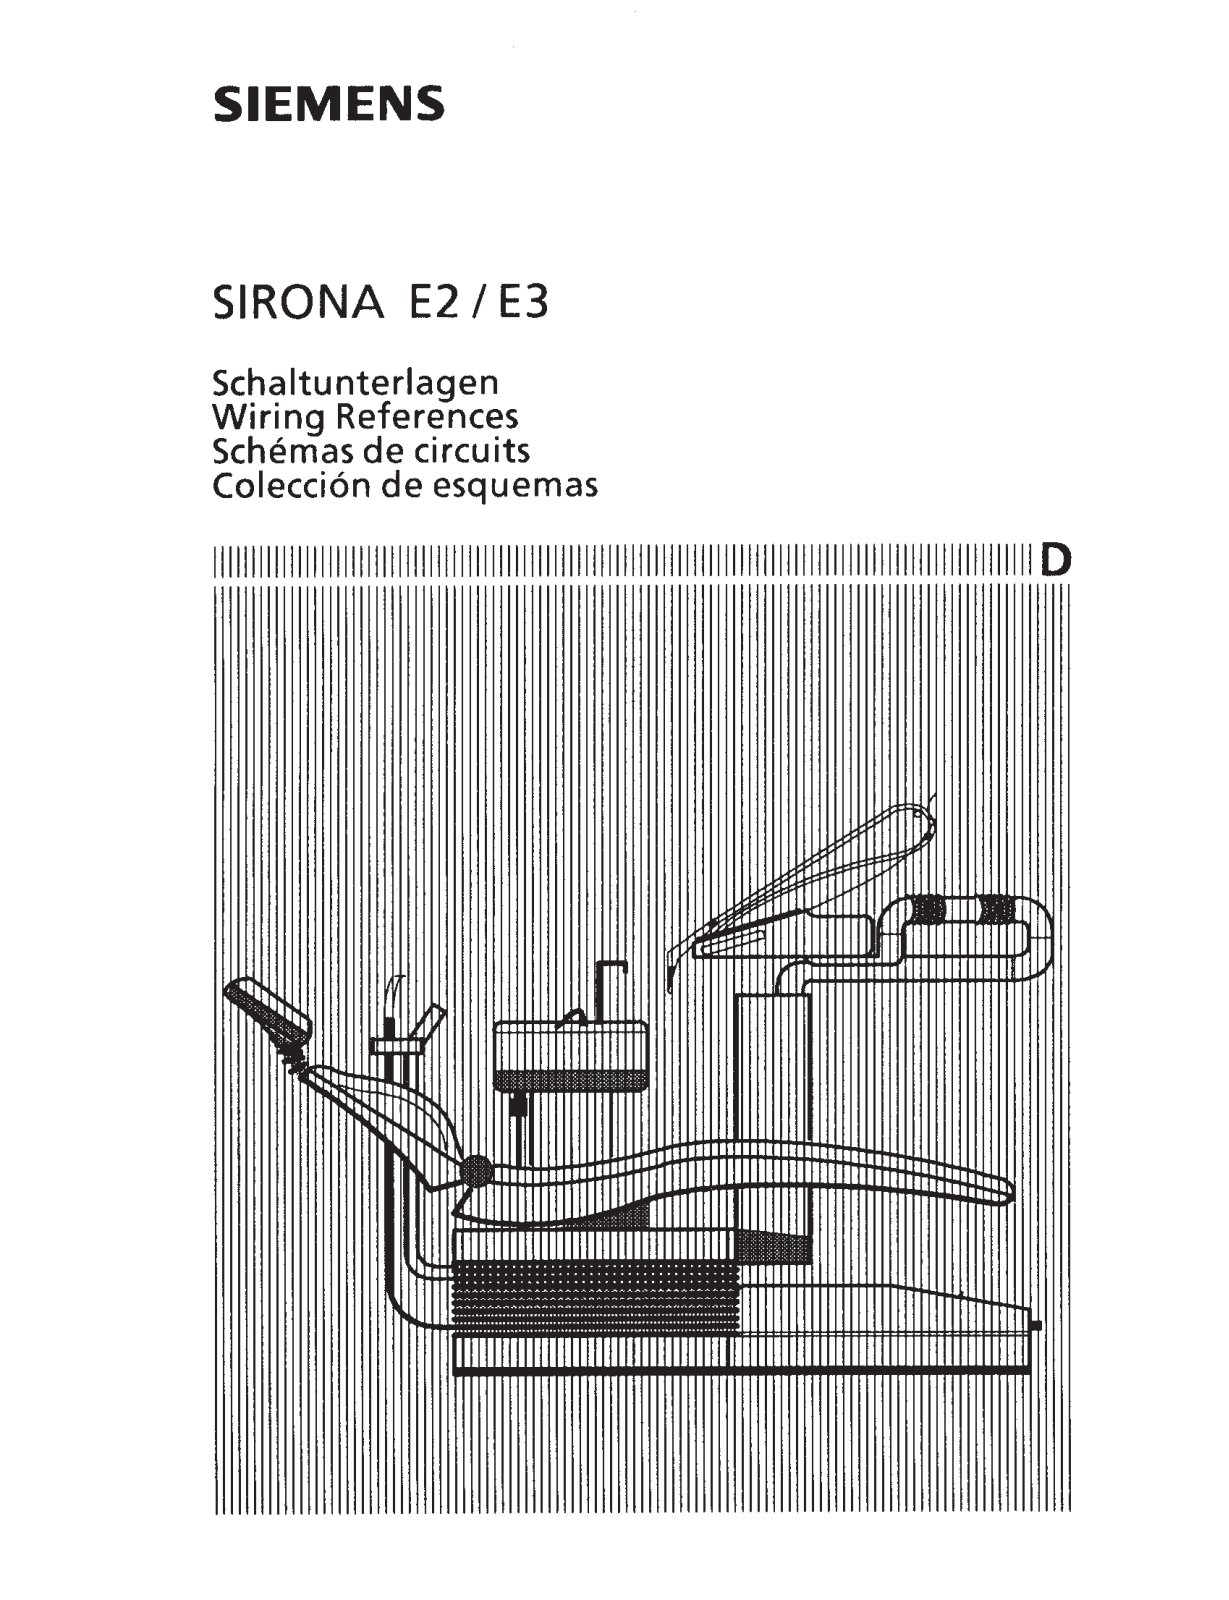 Siemens Sirona E2, Sirona E3 Circuit diagrams